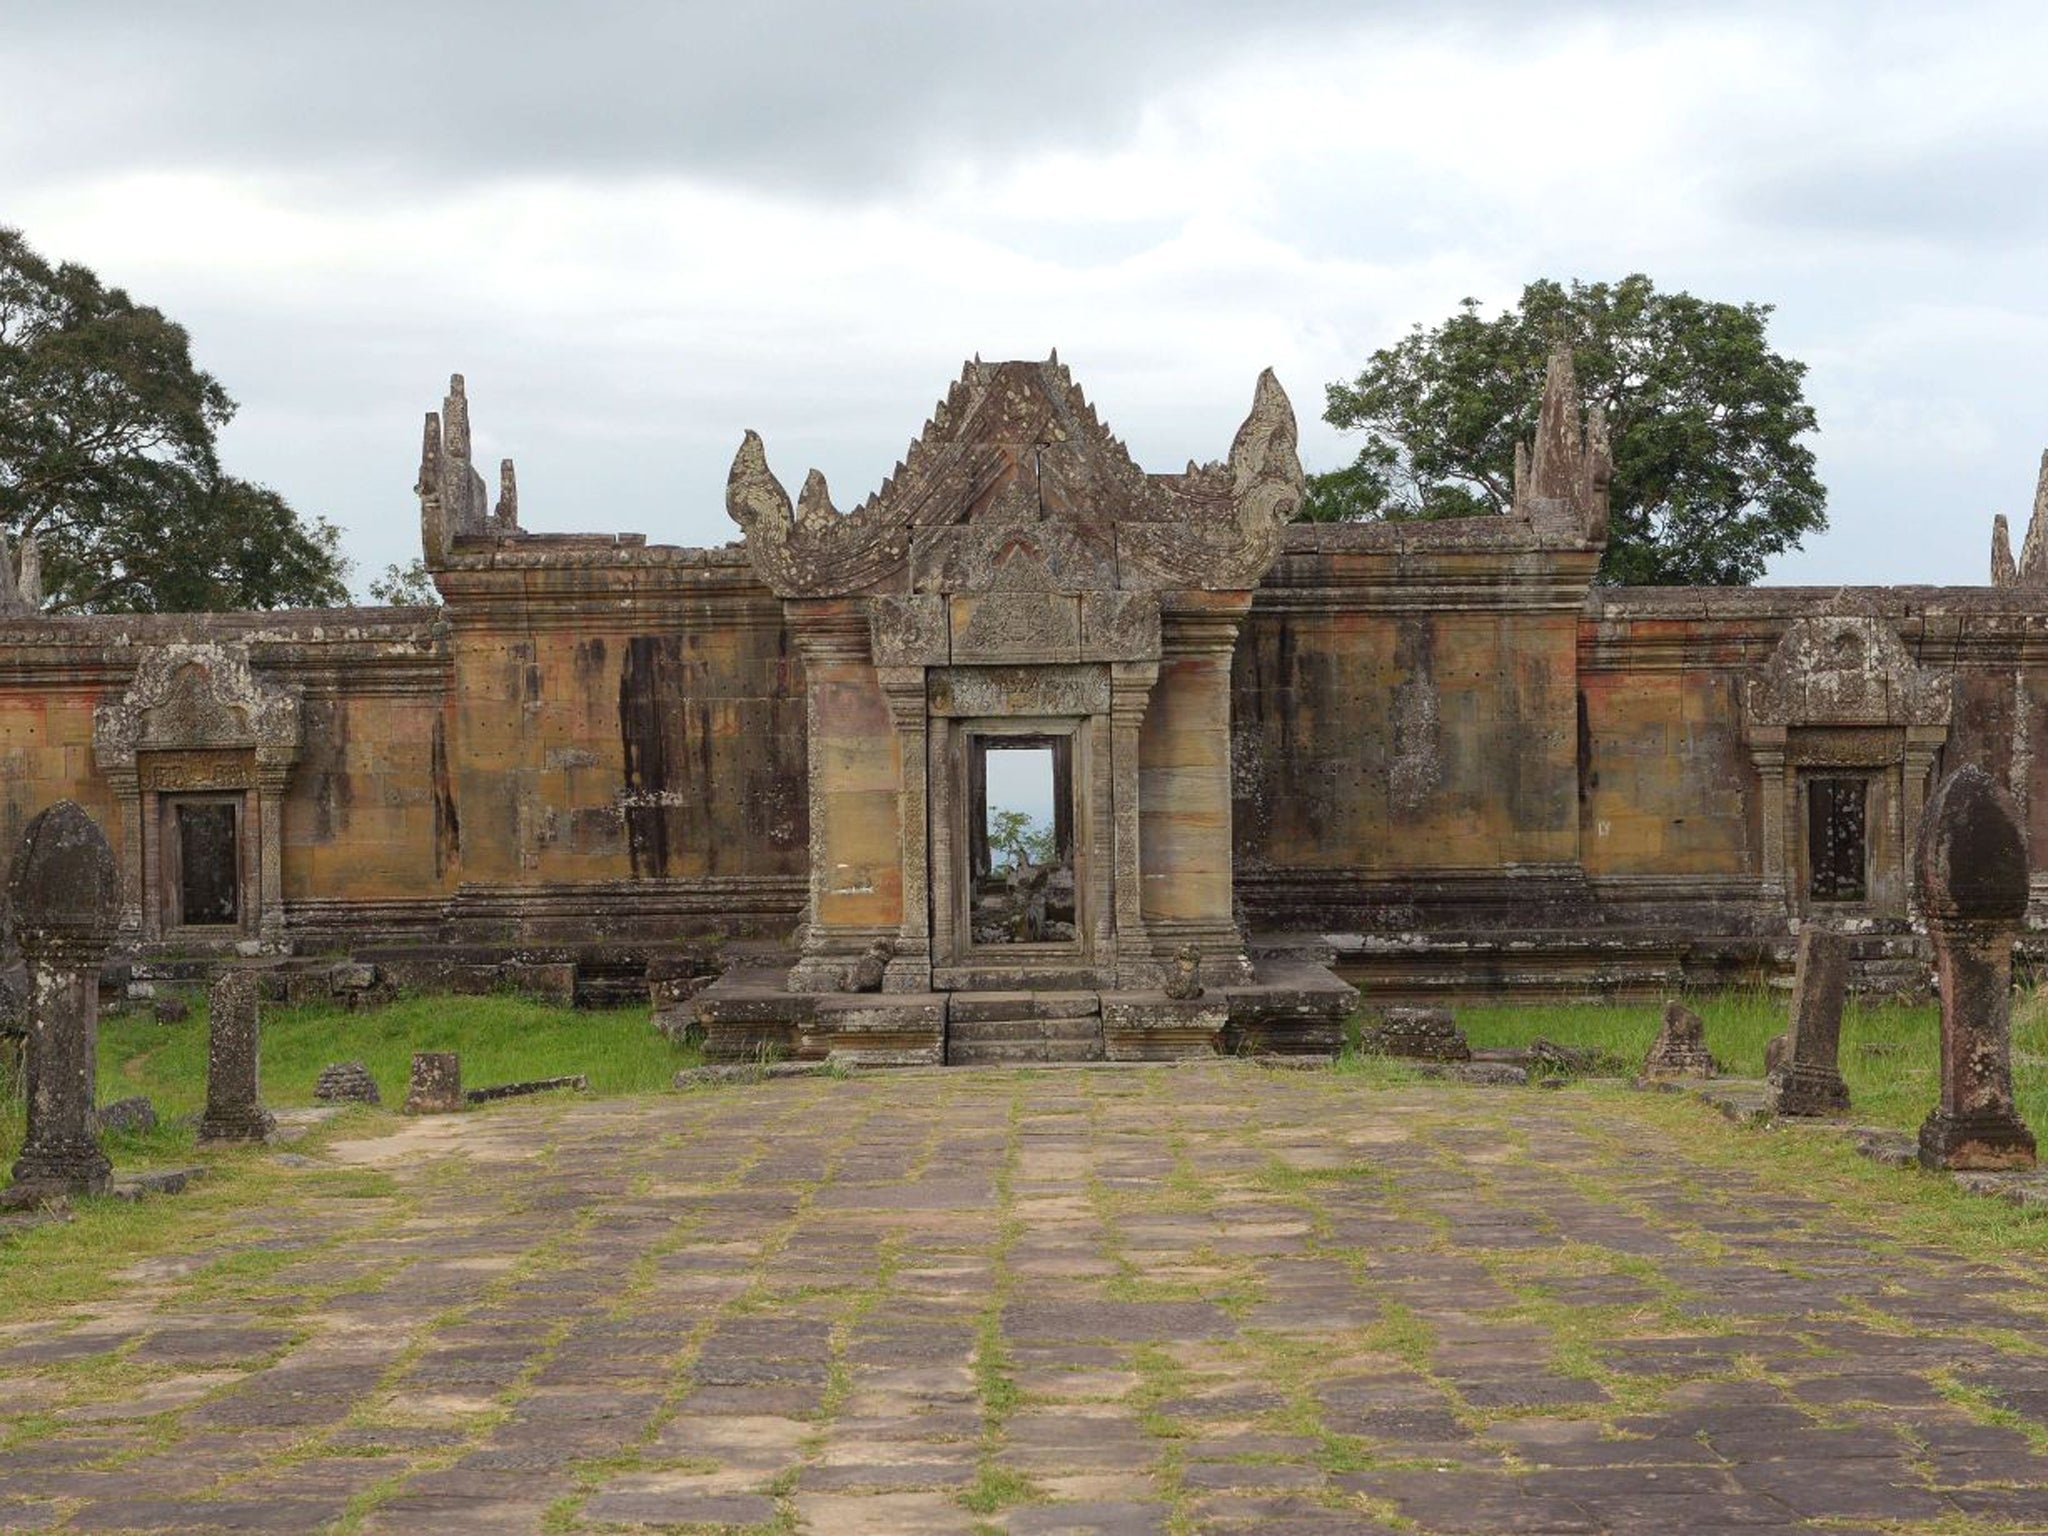 The Preah Vihear temple near Cambodia-Thailand border